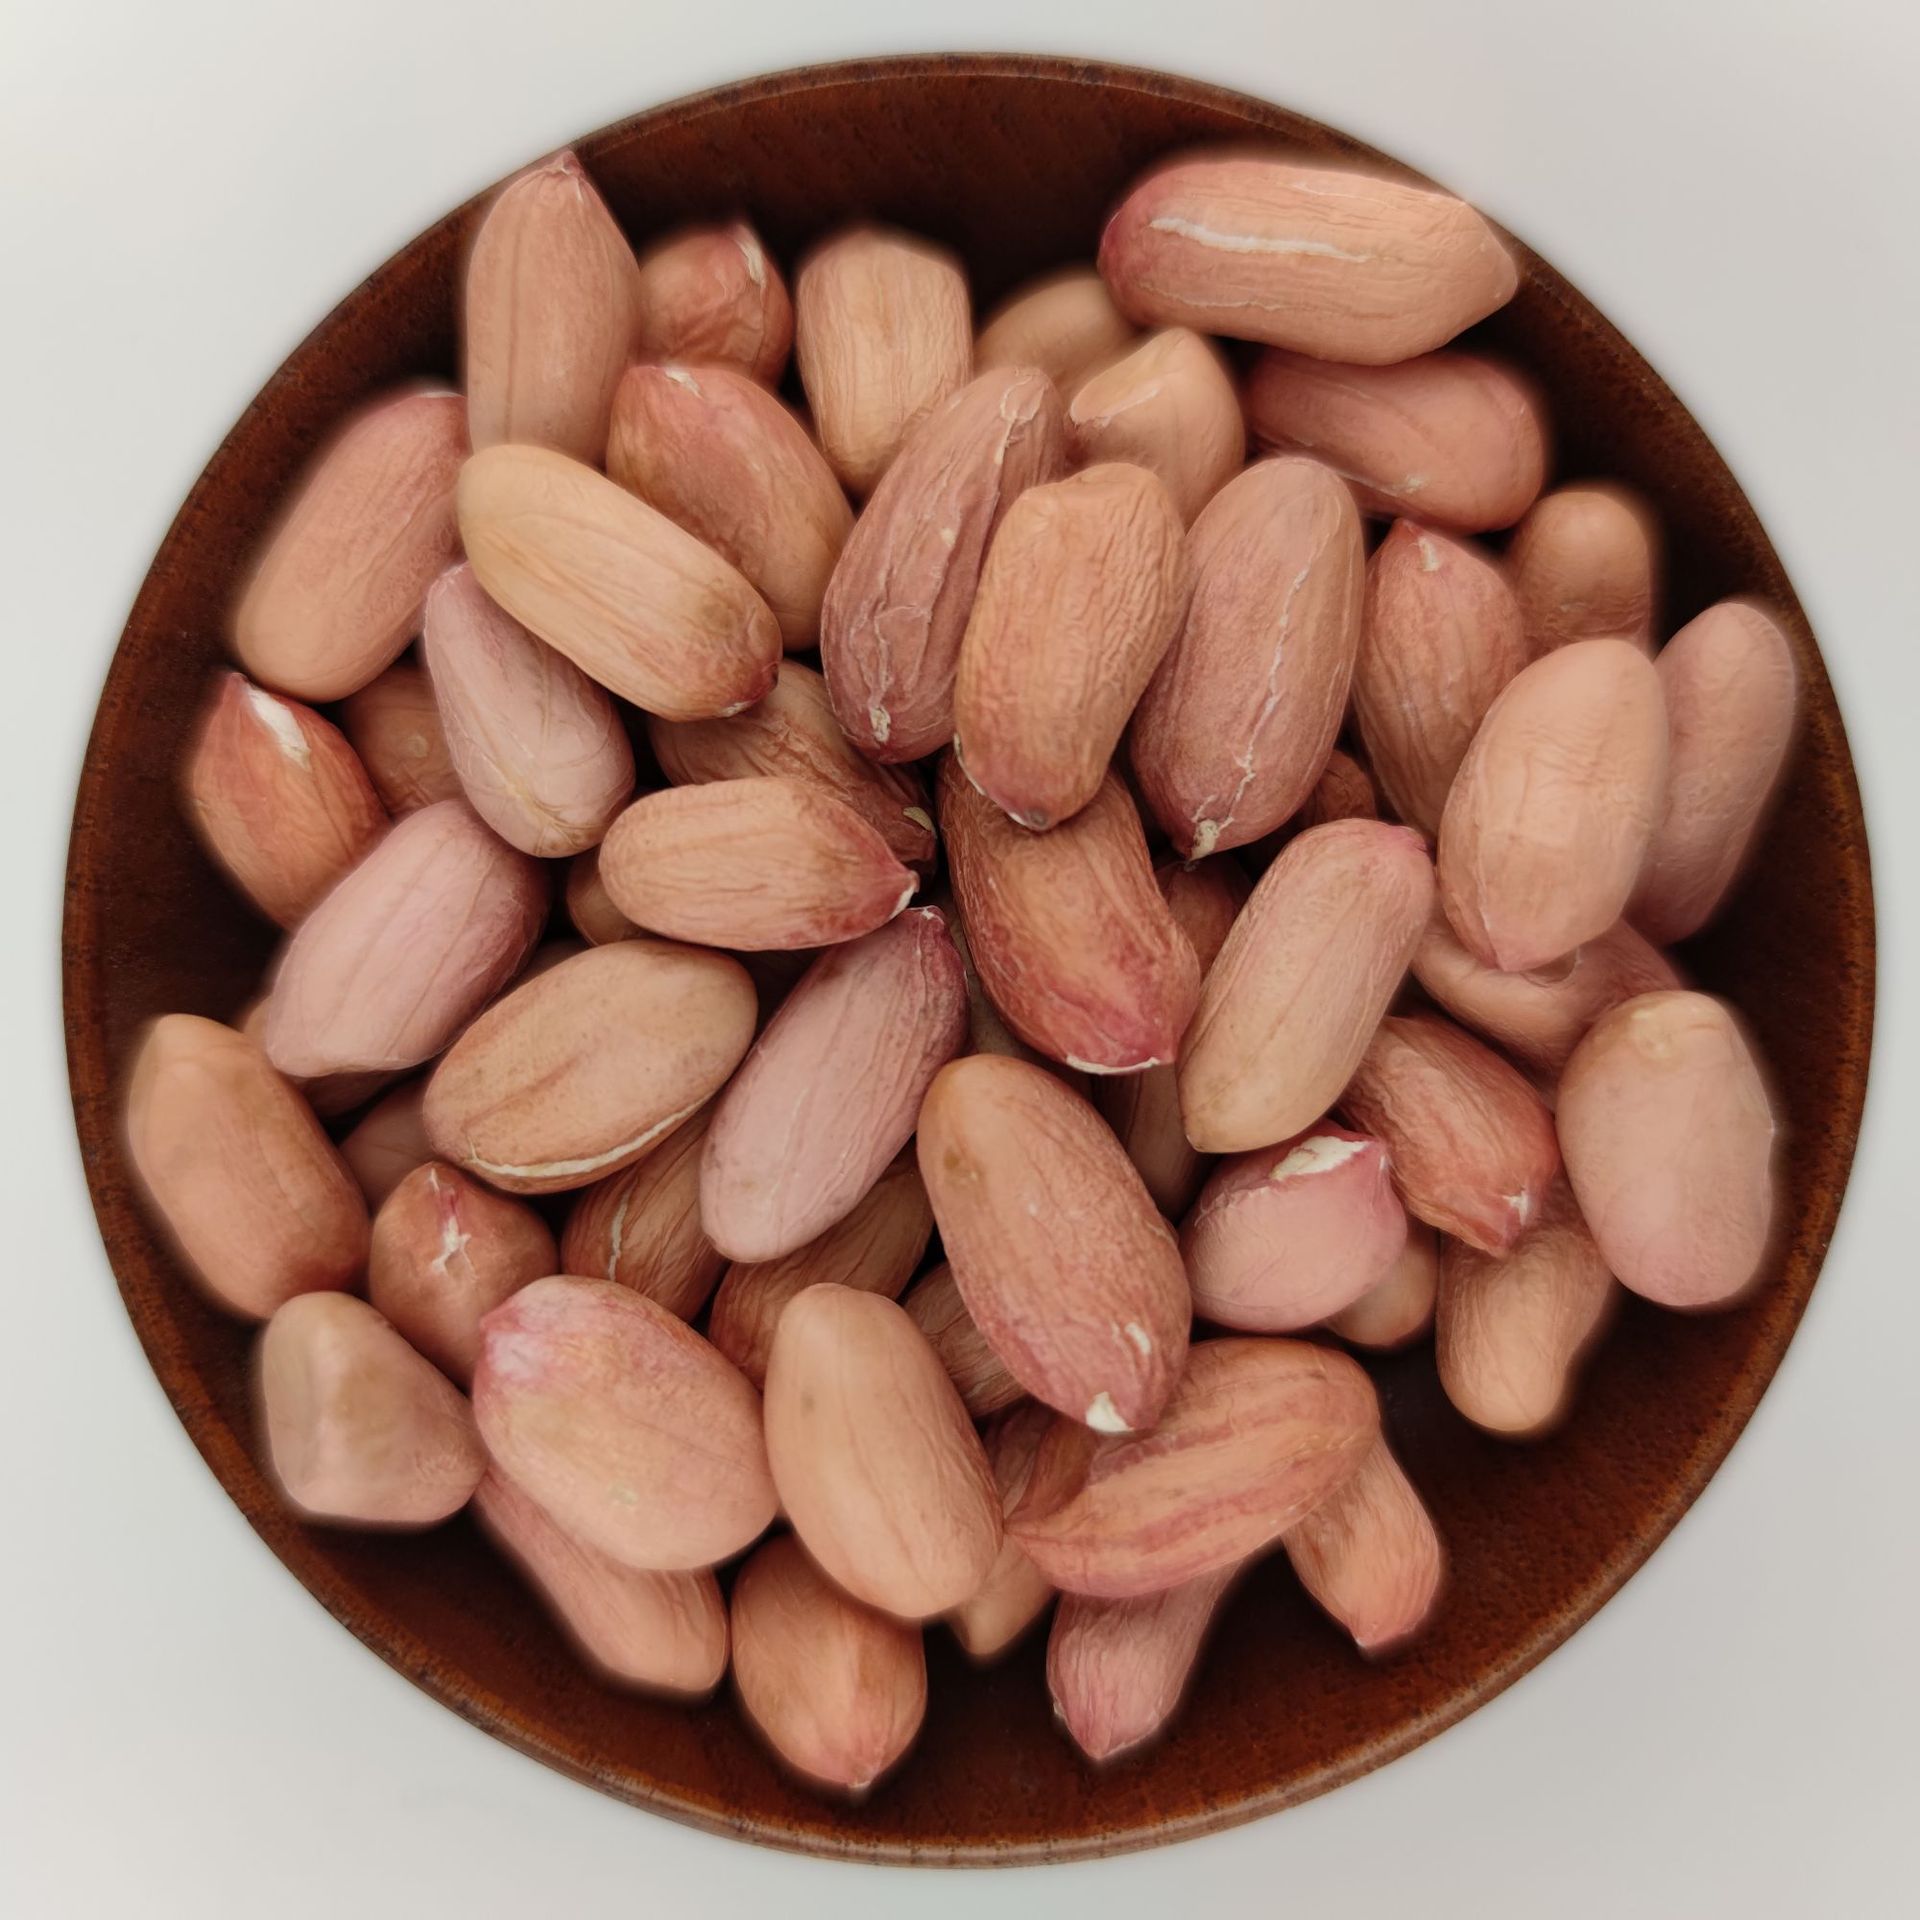 20 New Products 9616 peanut seed 25 Peanut seed Twenty five Hydroponics Peanut bud